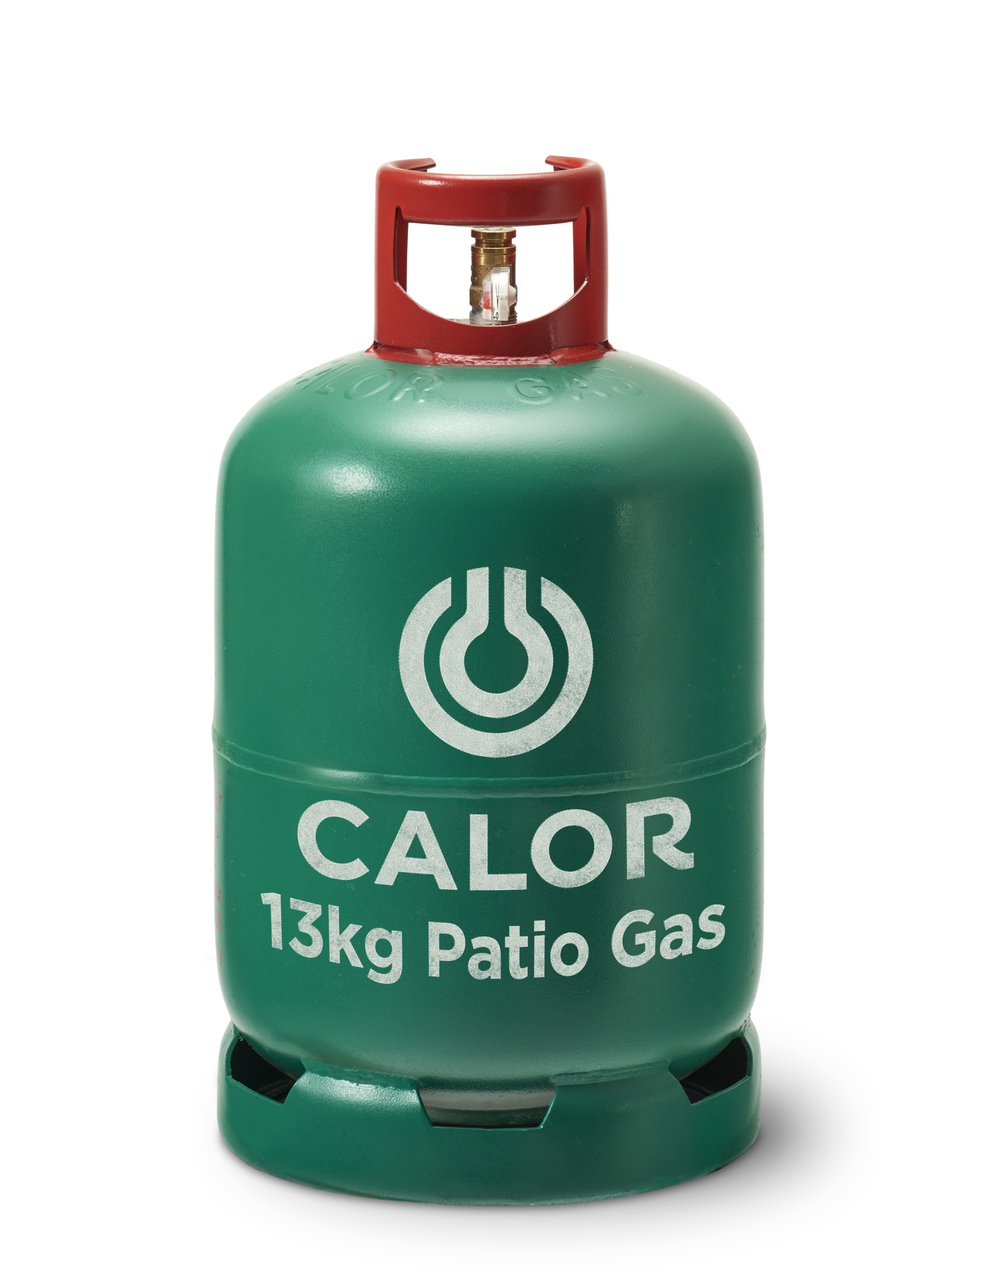 Supplier Of 13kg Patio Calor Gas Bottle Hampshire